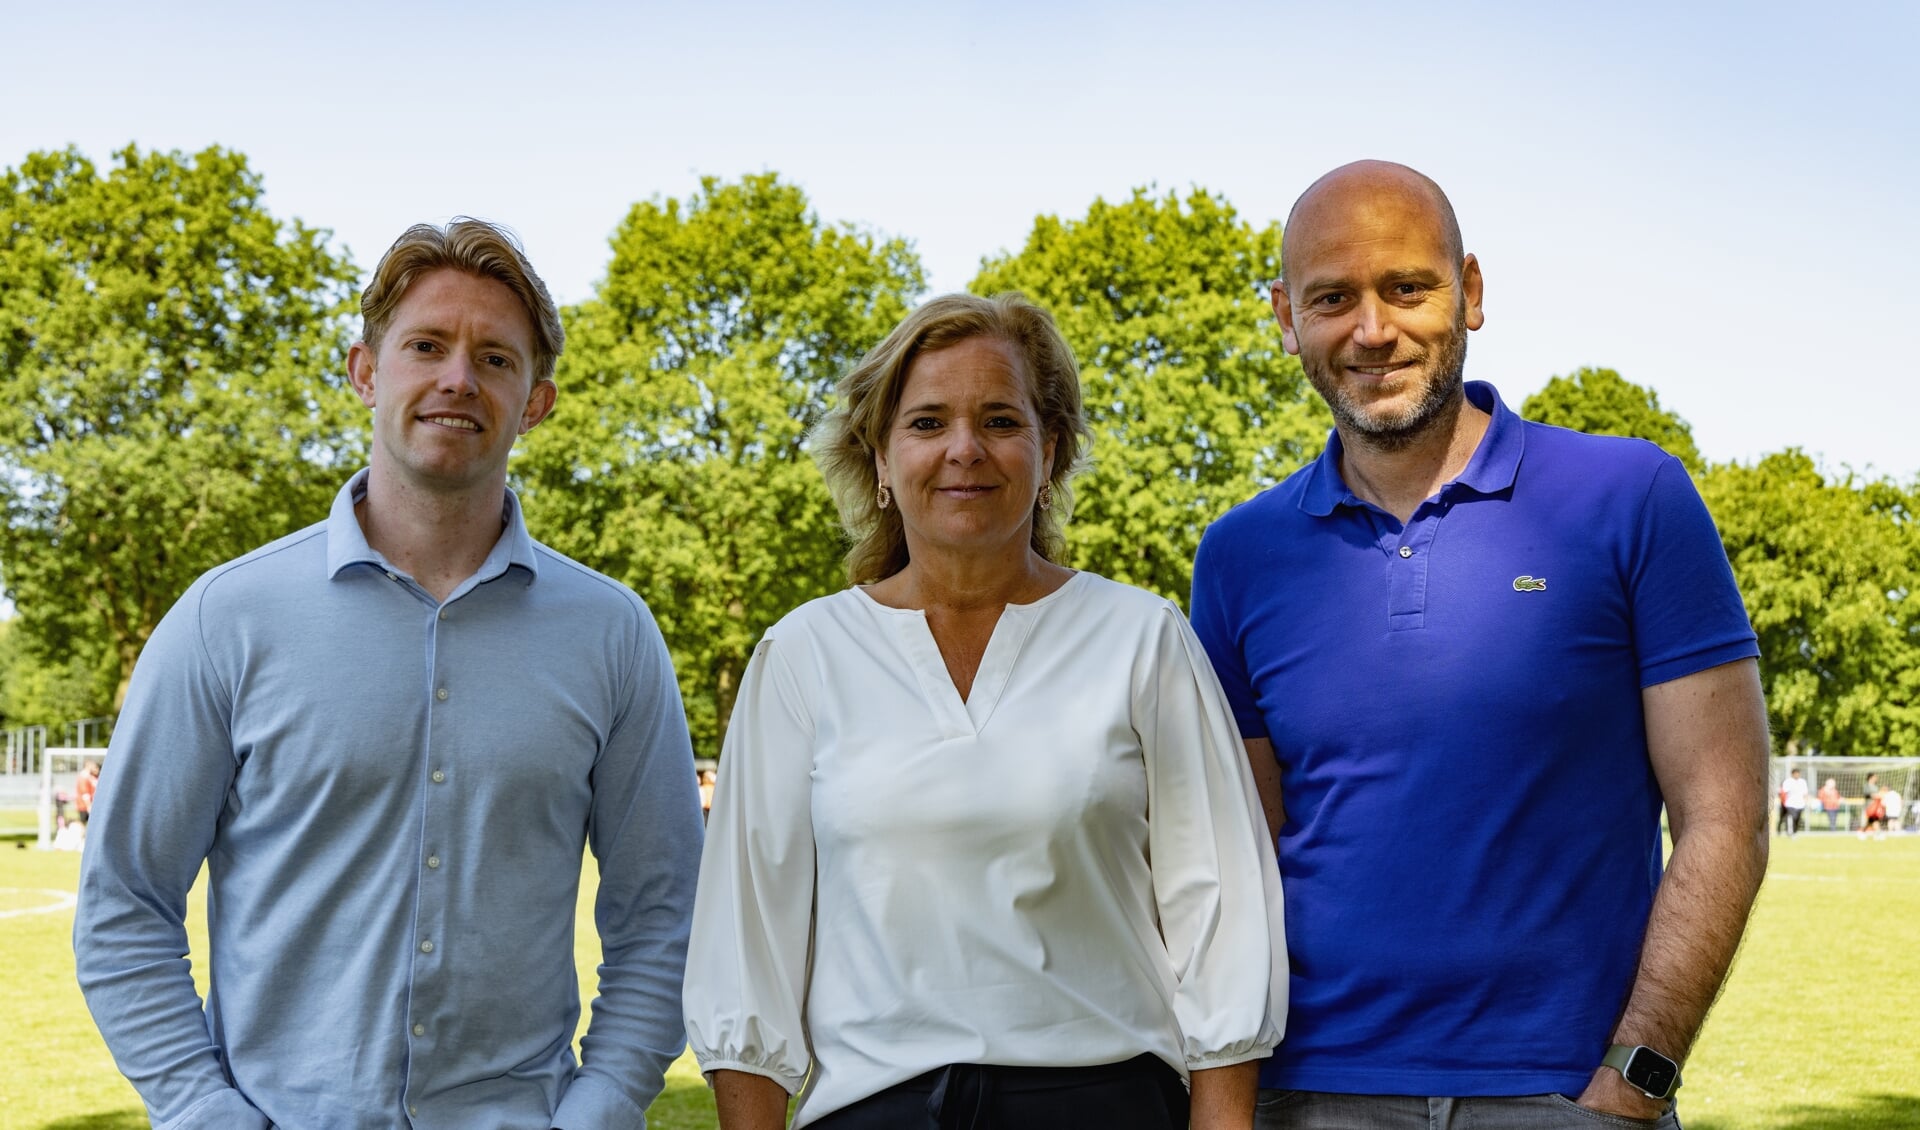 Dani Wientjens, Patricia Janssen en Yvo Heitling maken zich hard voor de campagne Hartveilig Voetballen.